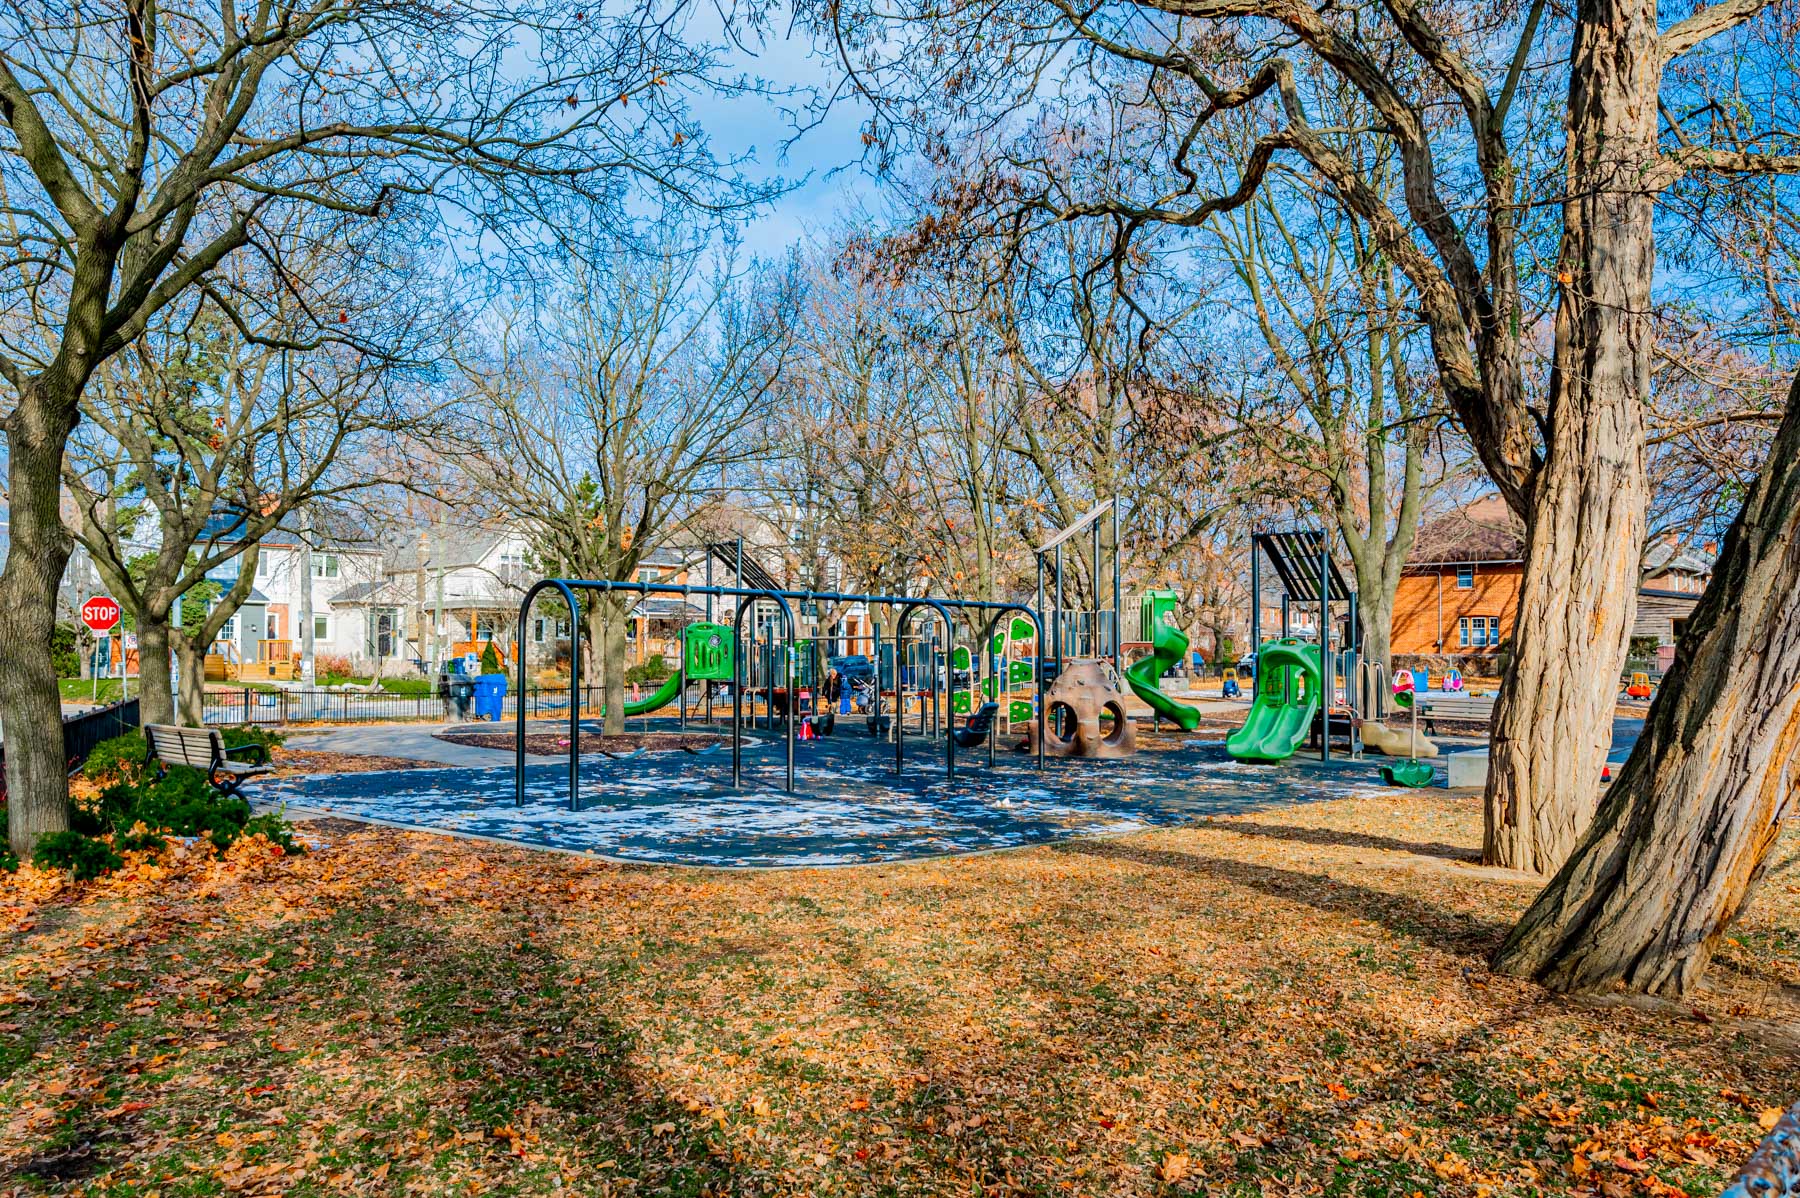 Playground equipment and trees at Woburn Ave Playground.